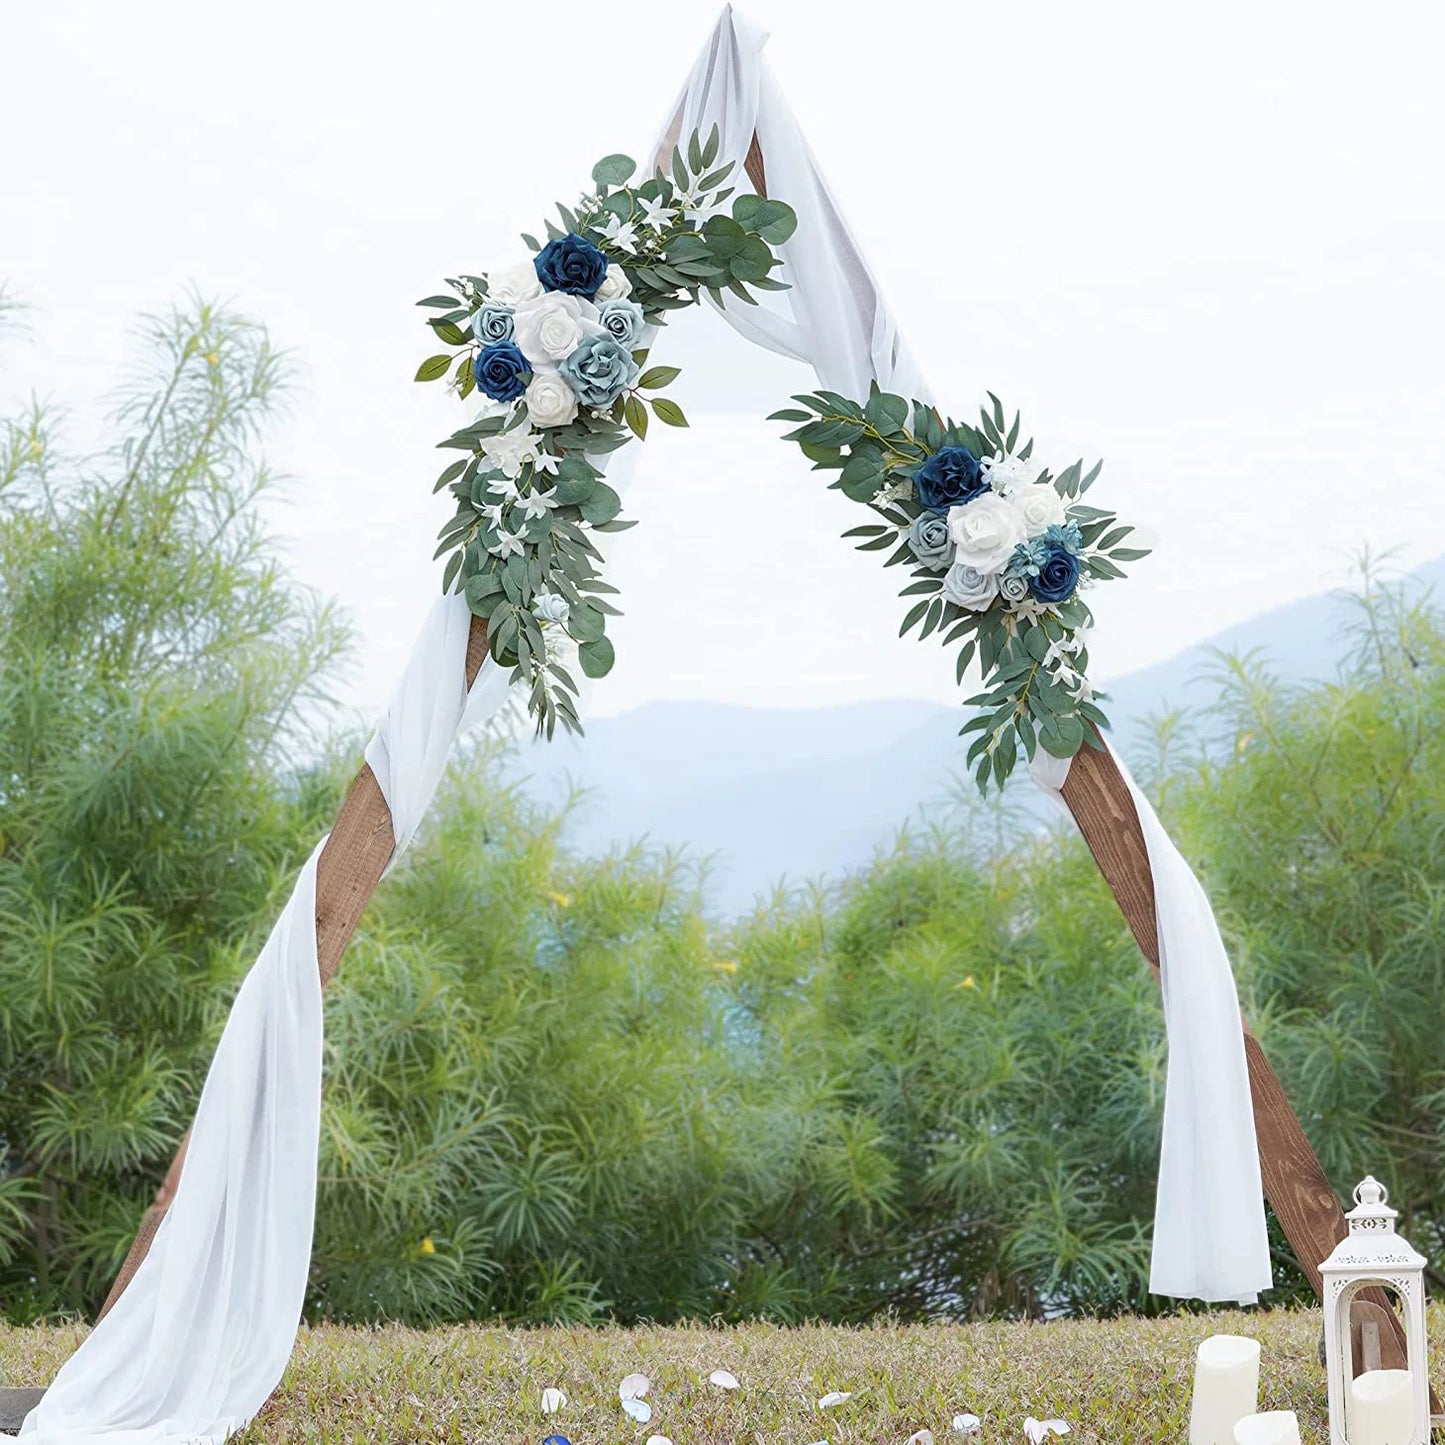 Yannew sztuczny łuk weselny Zestaw Boho Dusty Rose Blue Eucalyptus Garland Drape na dekoracje weselne